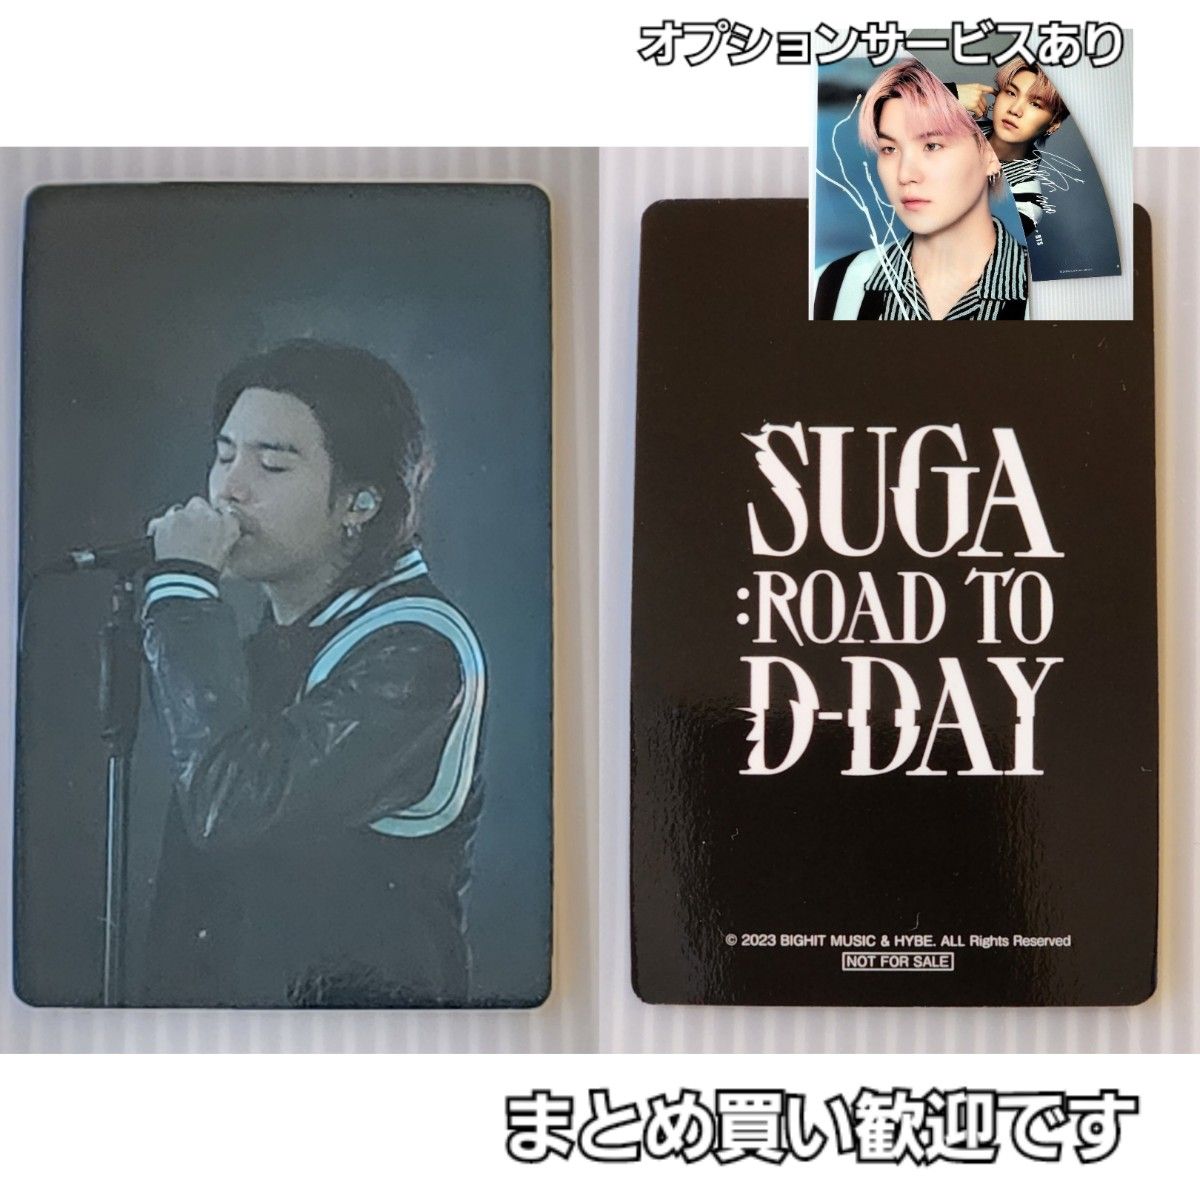 購入特典 - BTS Suga Tour D-DAY in JAPAN 限定ギターピック レア